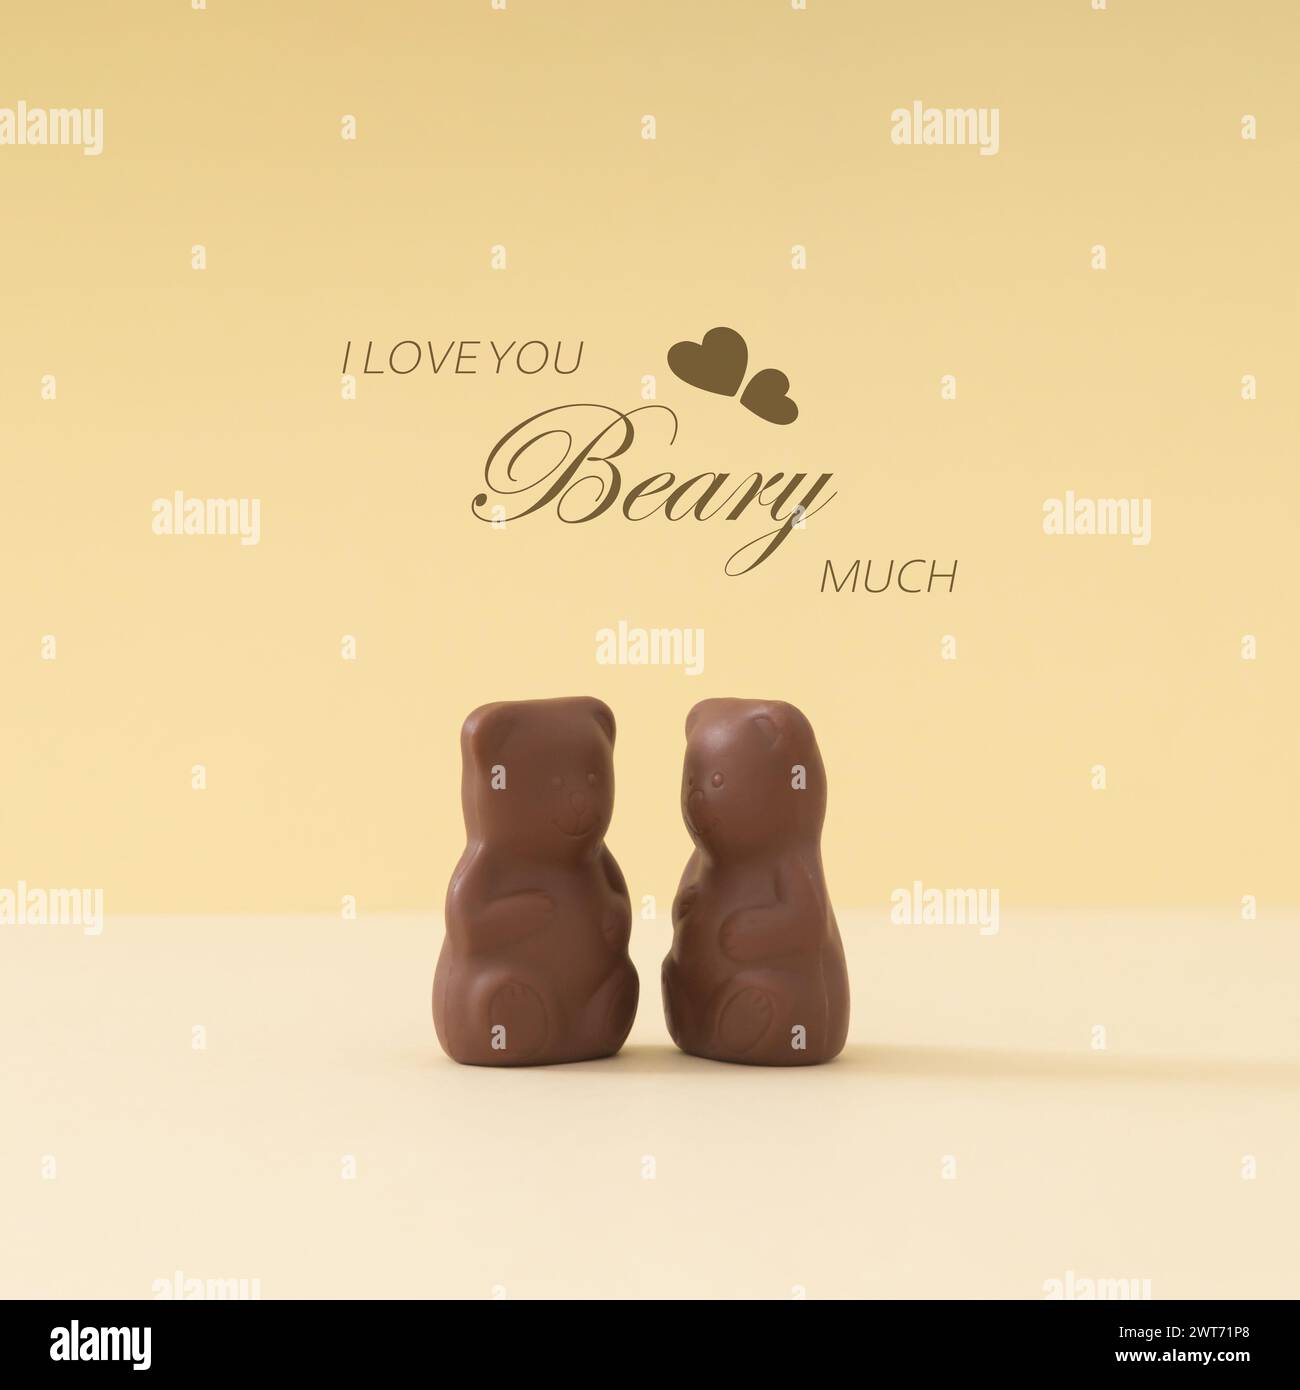 Mise en page créative d'ours en peluche au chocolat avec le message « I love you beary Much » sur fond crème pastel. Concept d'amour romantique. Délicieuse idée de nourriture sucrée Banque D'Images